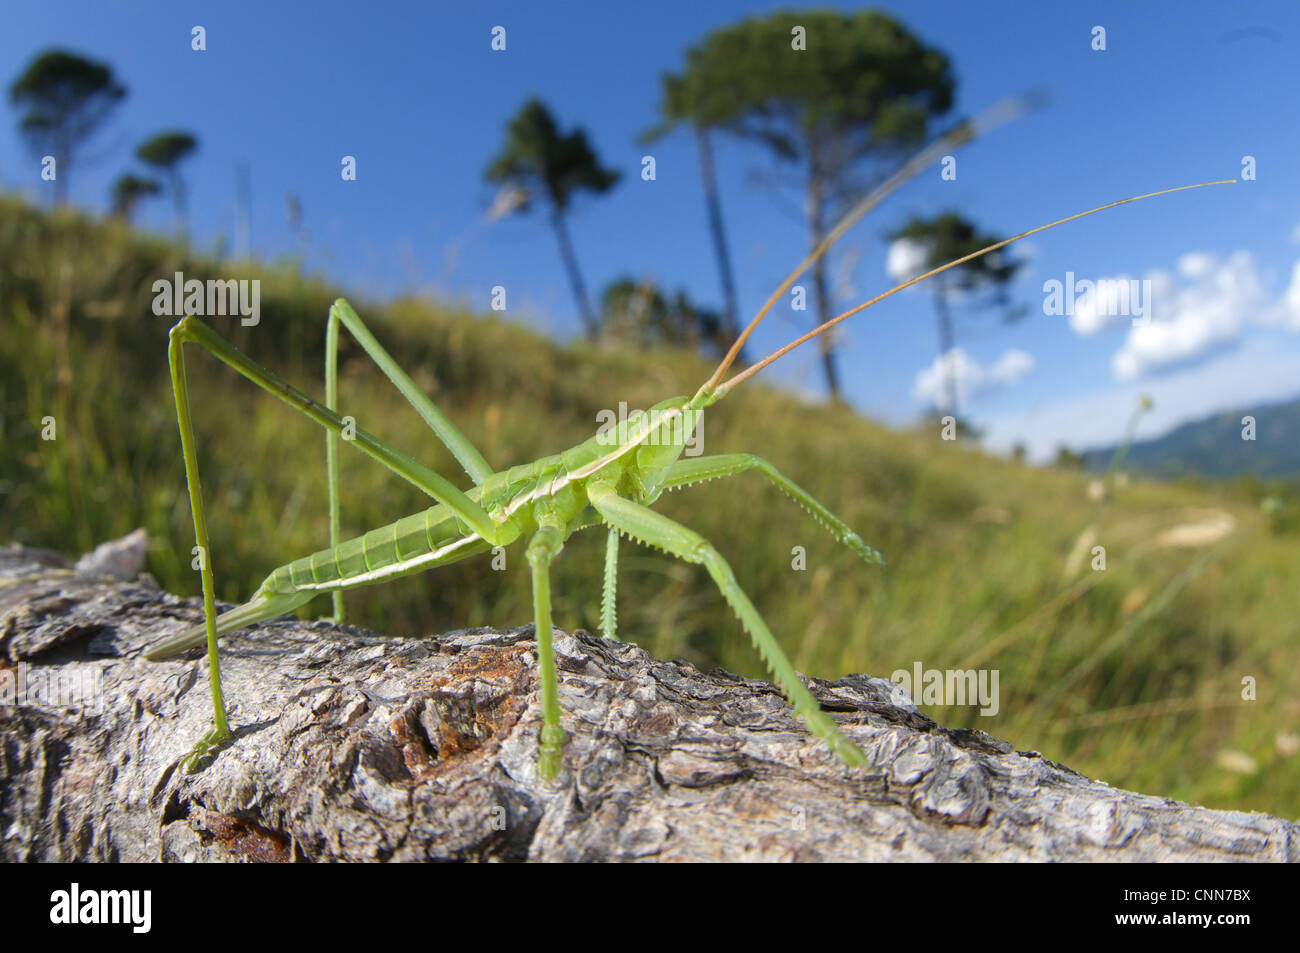 Bush depredador-cricket (Saga pedo) subadulto, en rama en hábitat, Italia Foto de stock